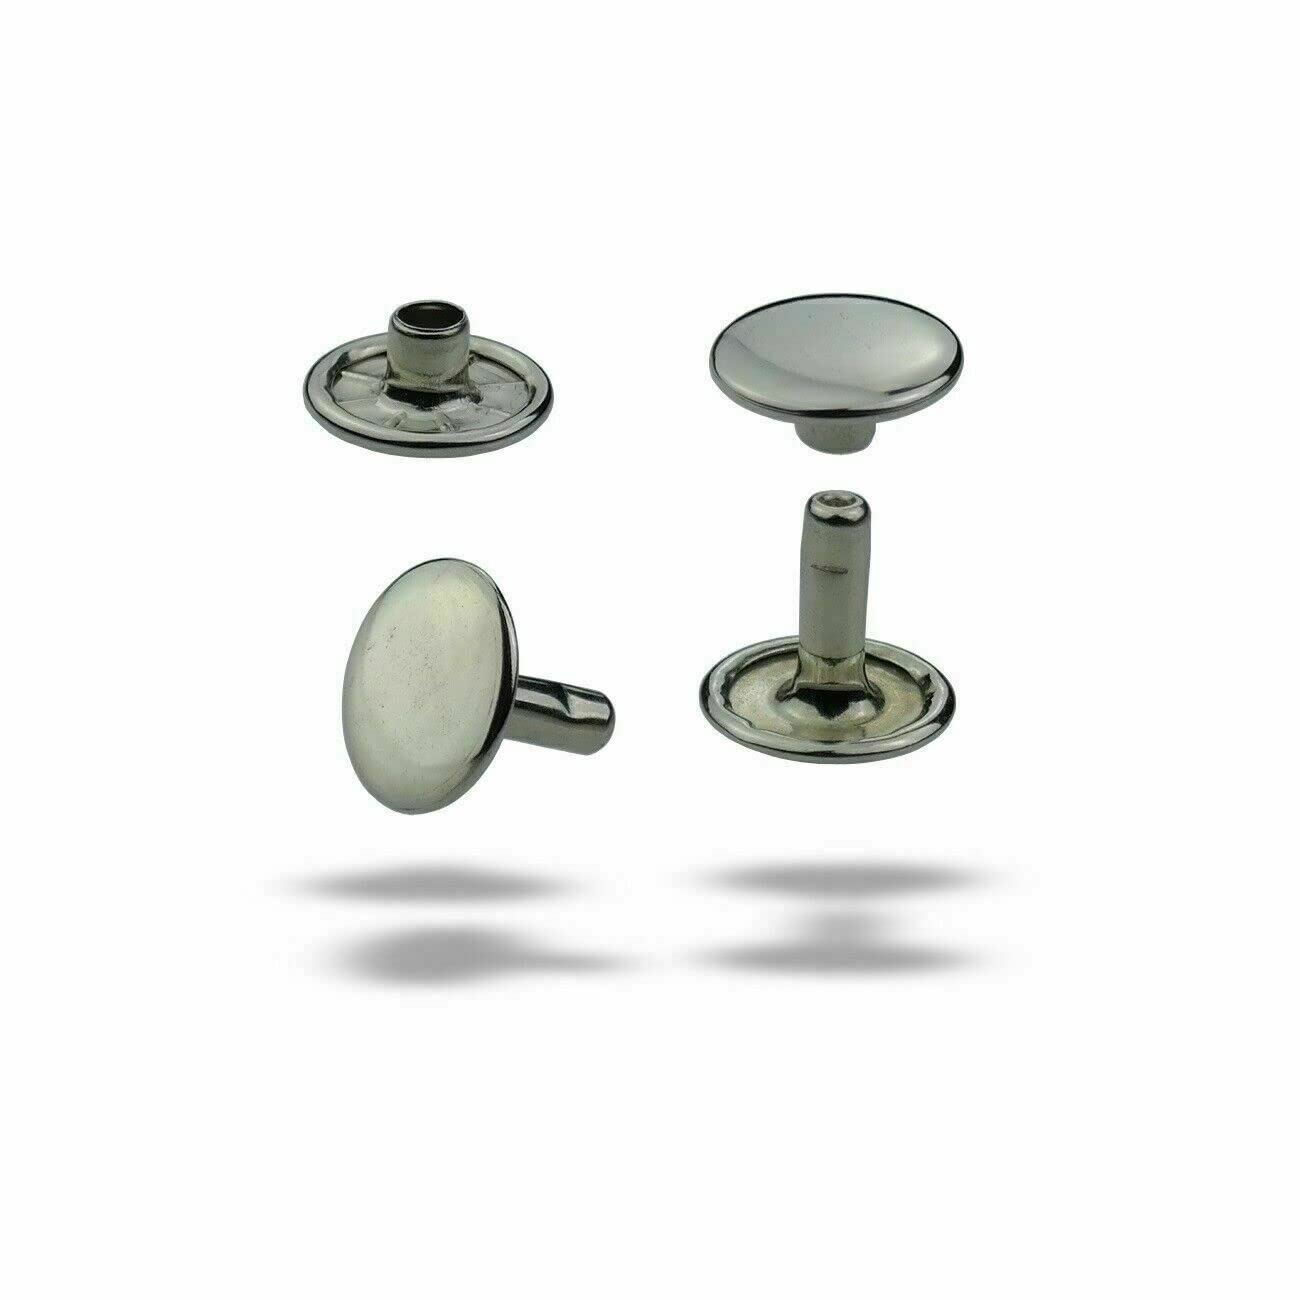 ISTA TOOLS MEGA Auswahl korrosionsbeständige Doppelkopf Hohlnieten,Doppelhohlnieten, Doppel-Nieten,zweiteilig (13 x 11 mm, Silber nickelfrei, 125)